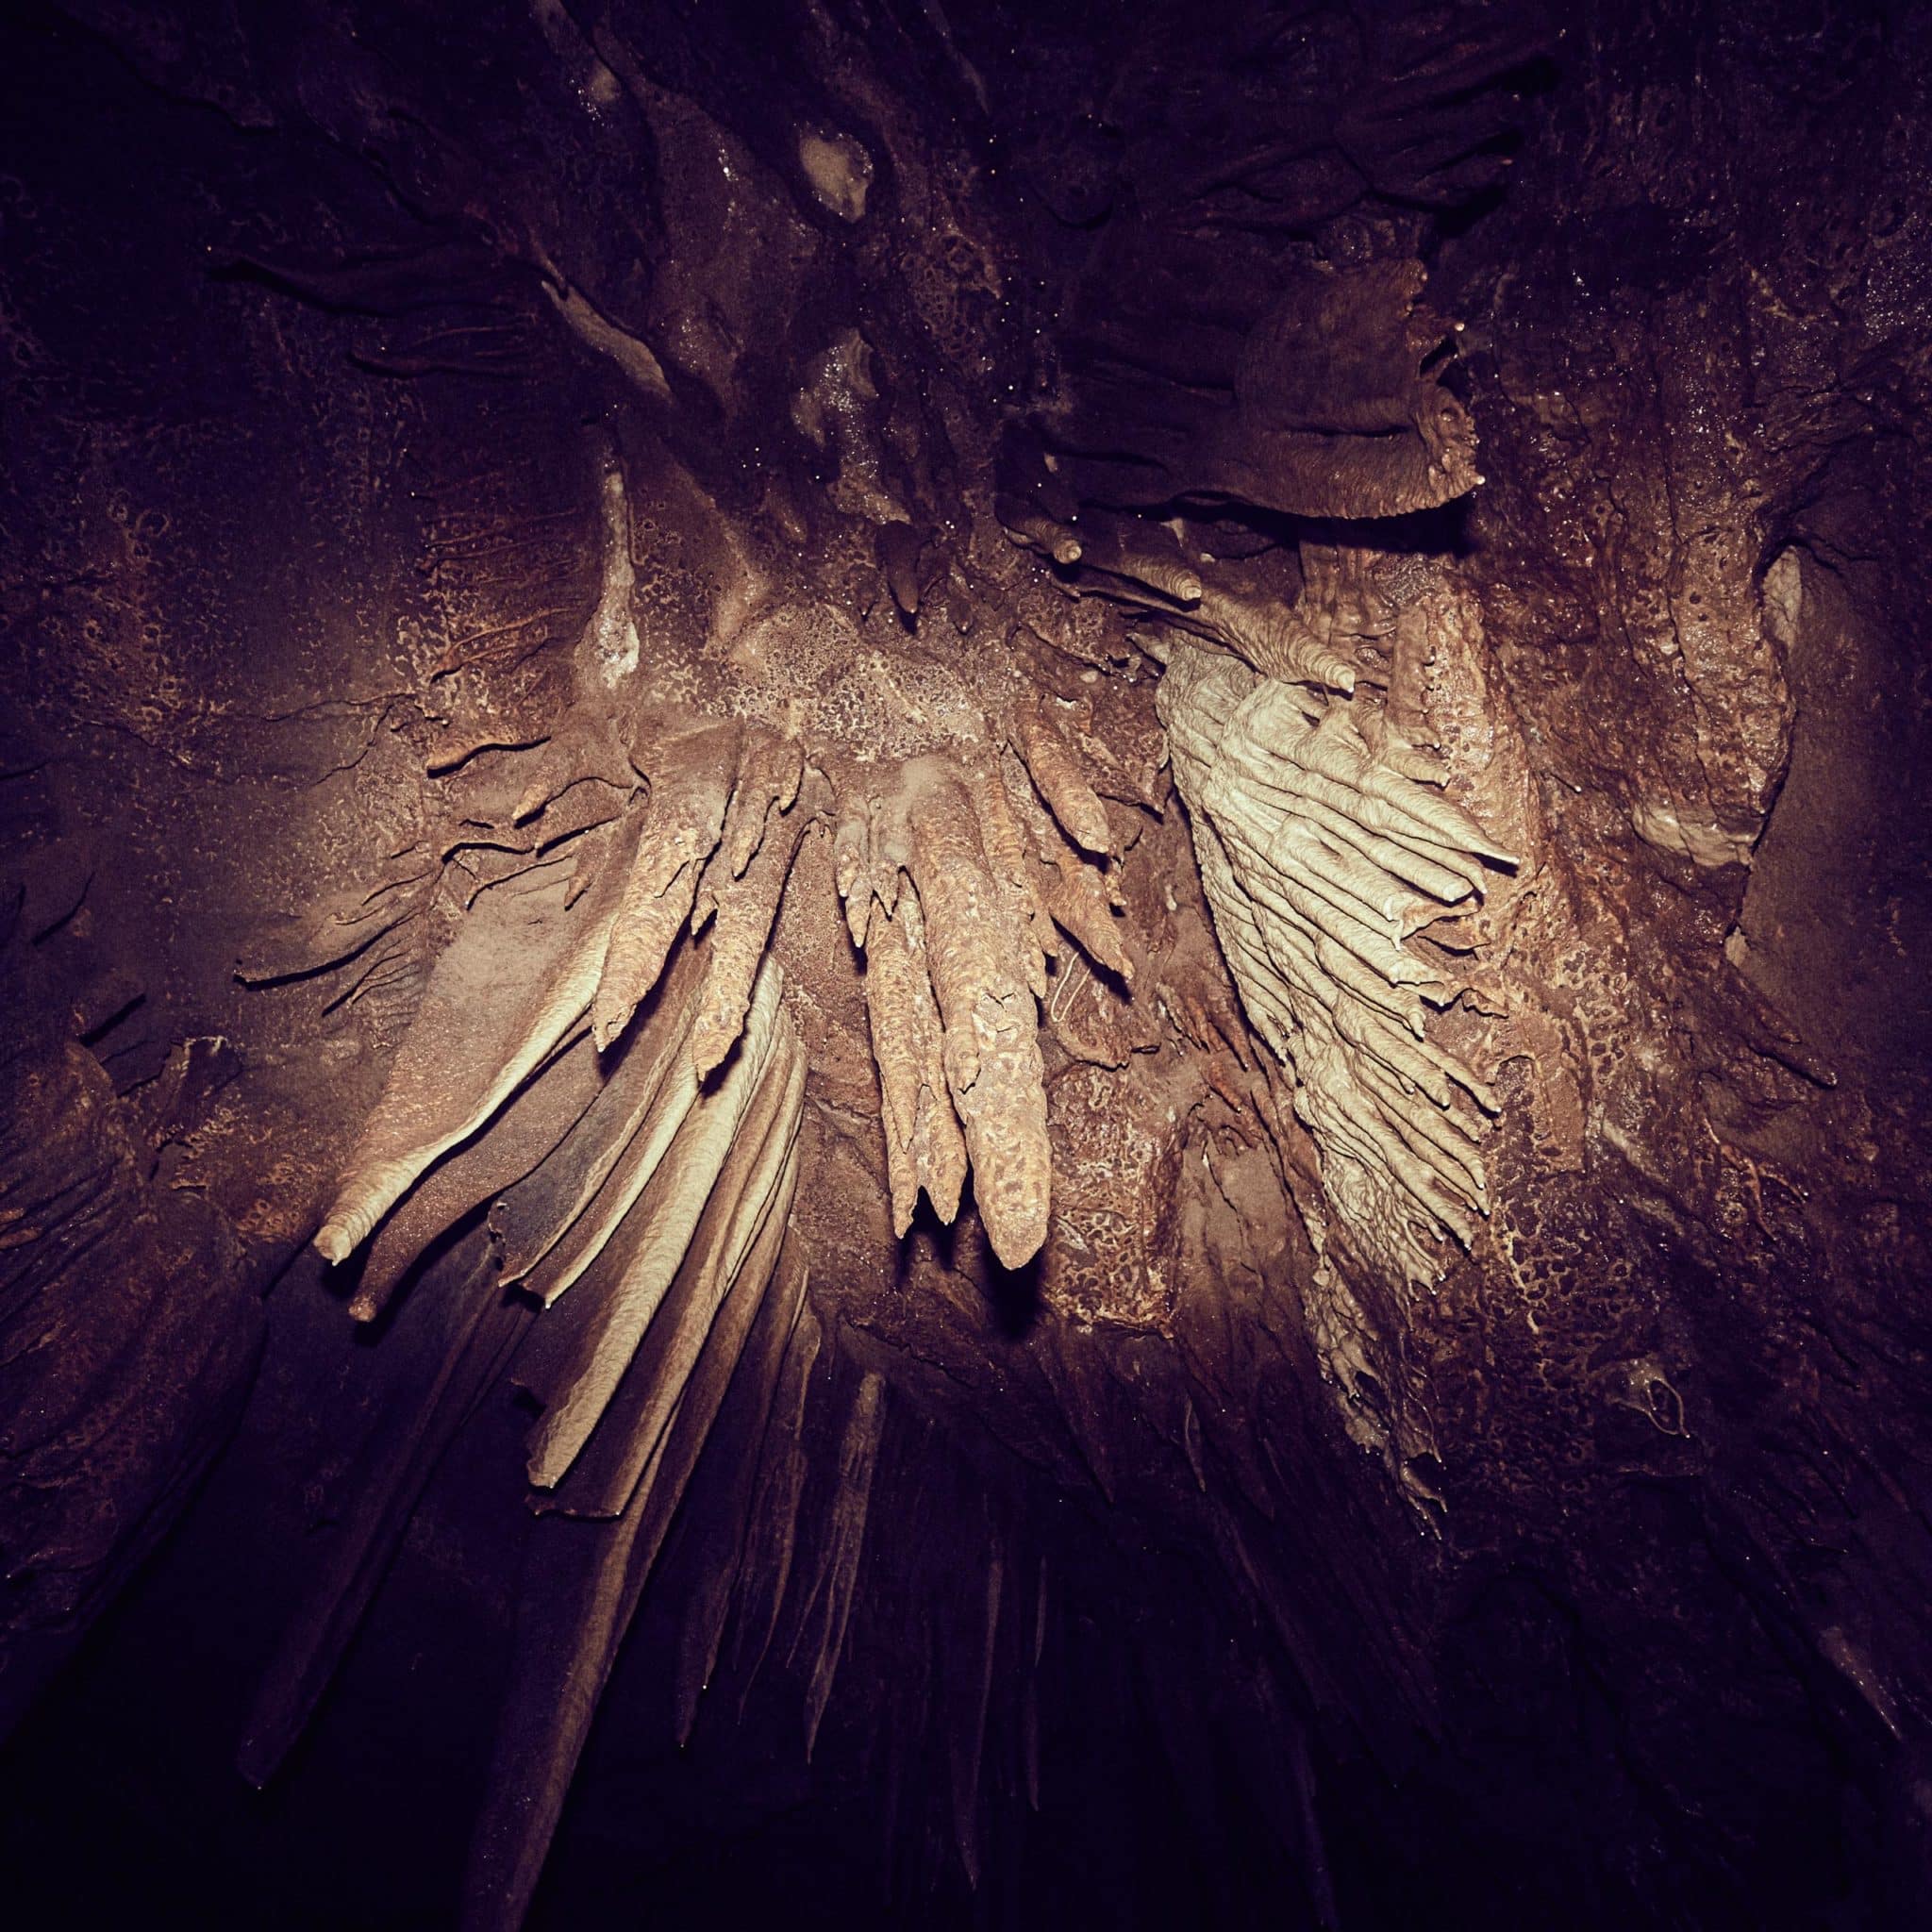 Tropfsteine in der Höhle. Seit tausenden von Jahren unberührt.